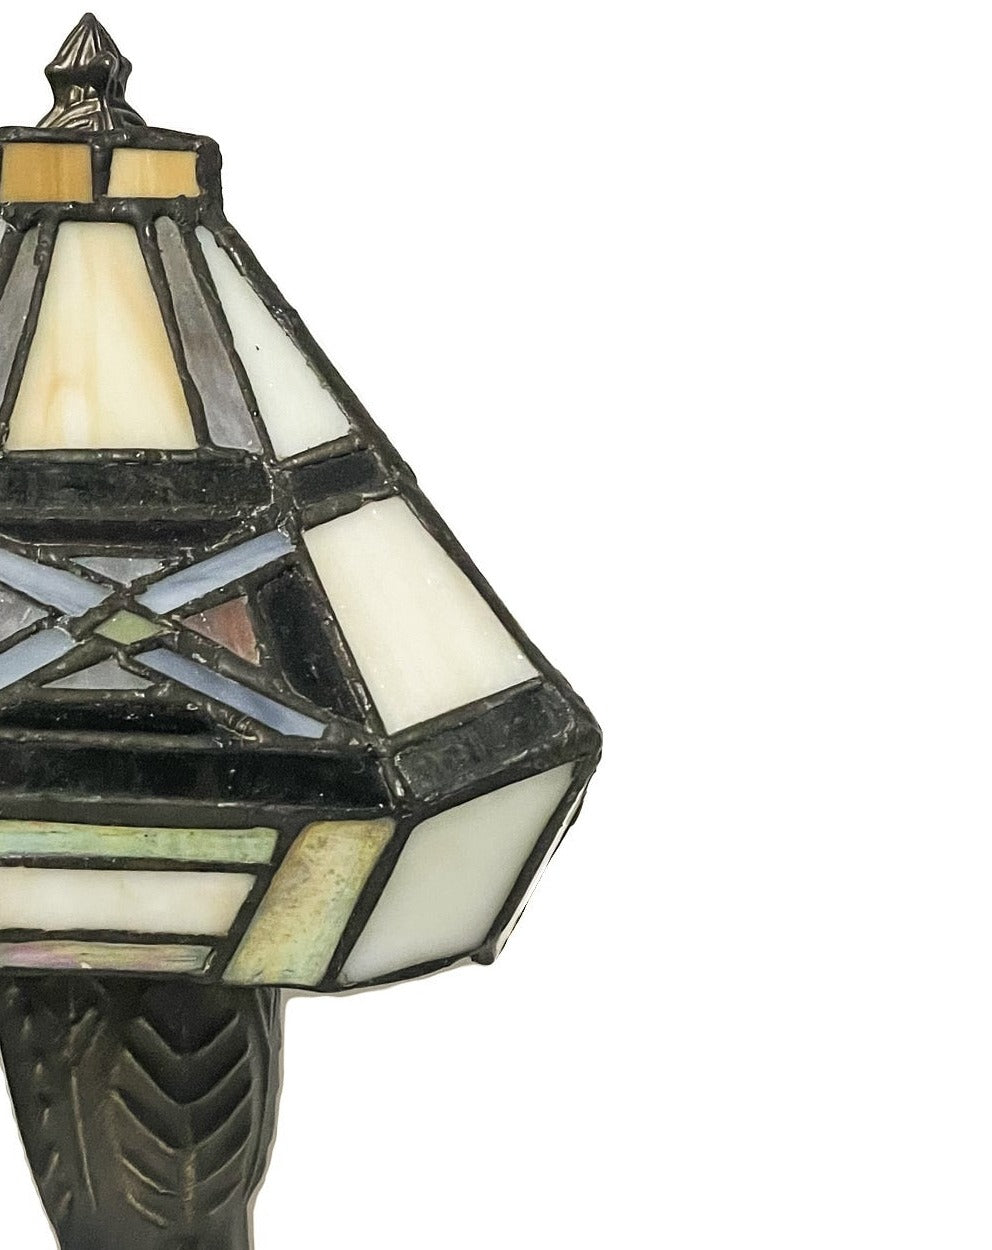 Vintage Art-Deco lamp